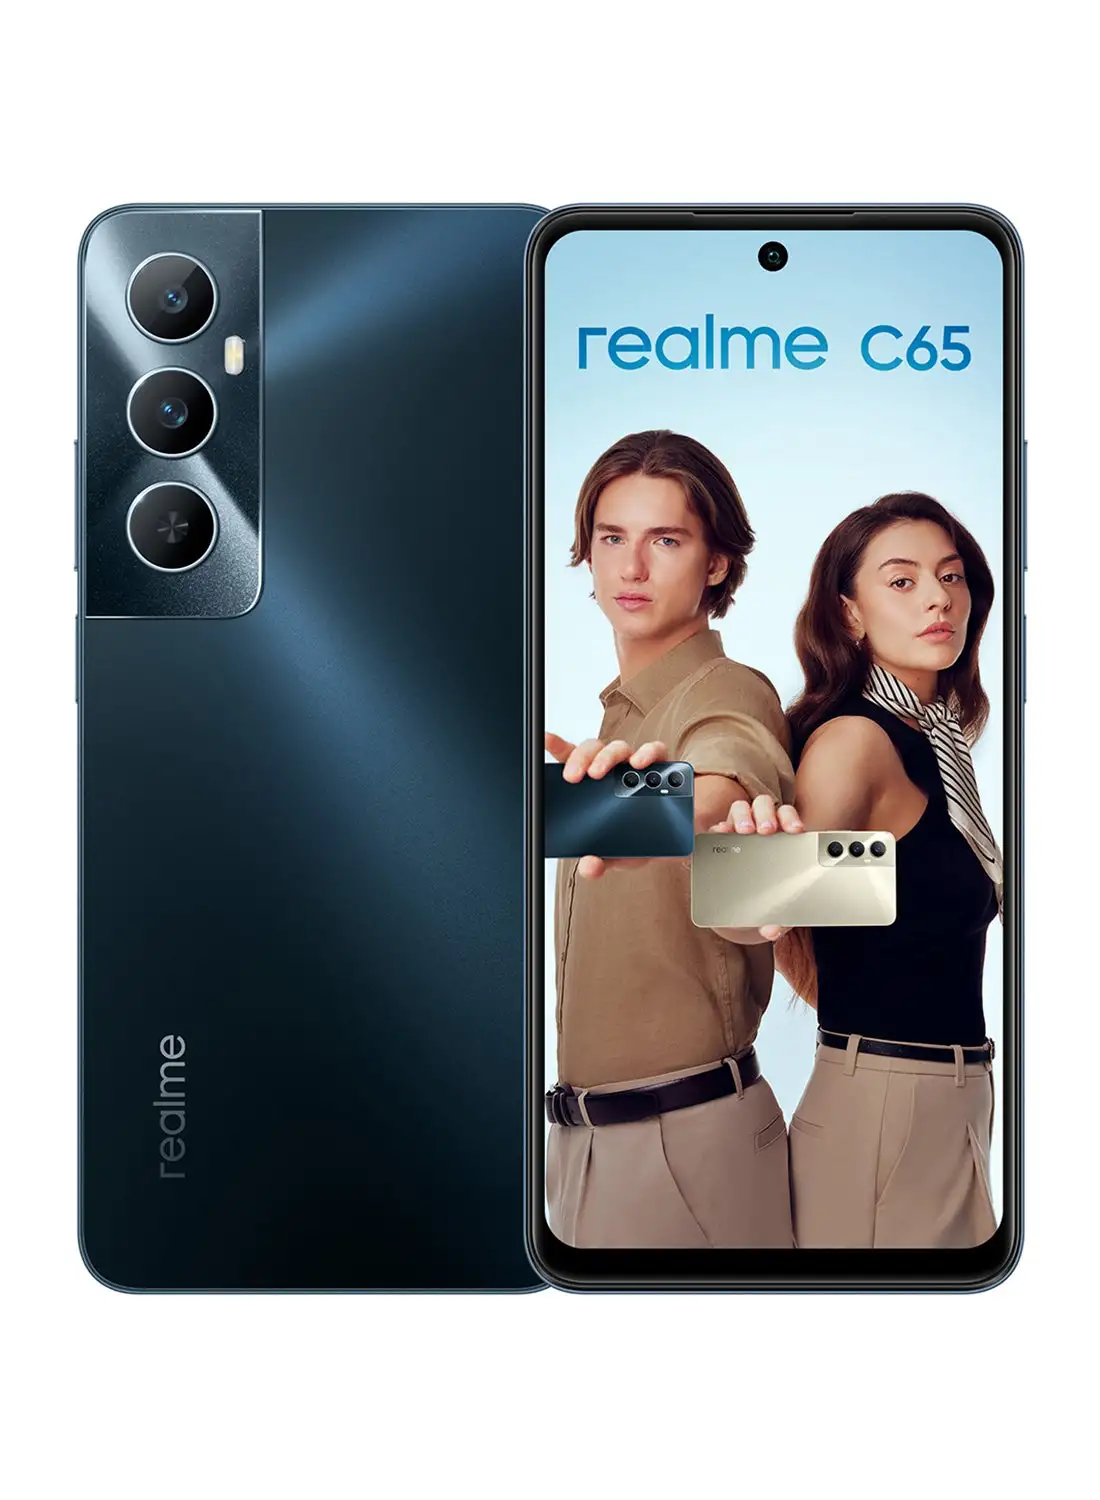 Realme C65 ثنائي الشريحة باللون الأسود النجمي وذاكرة الوصول العشوائي (RAM) سعة 8 جيجابايت وذاكرة تخزين داخلية 256 جيجابايت يدعم تقنية 4G - إصدار الشرق الأوسط